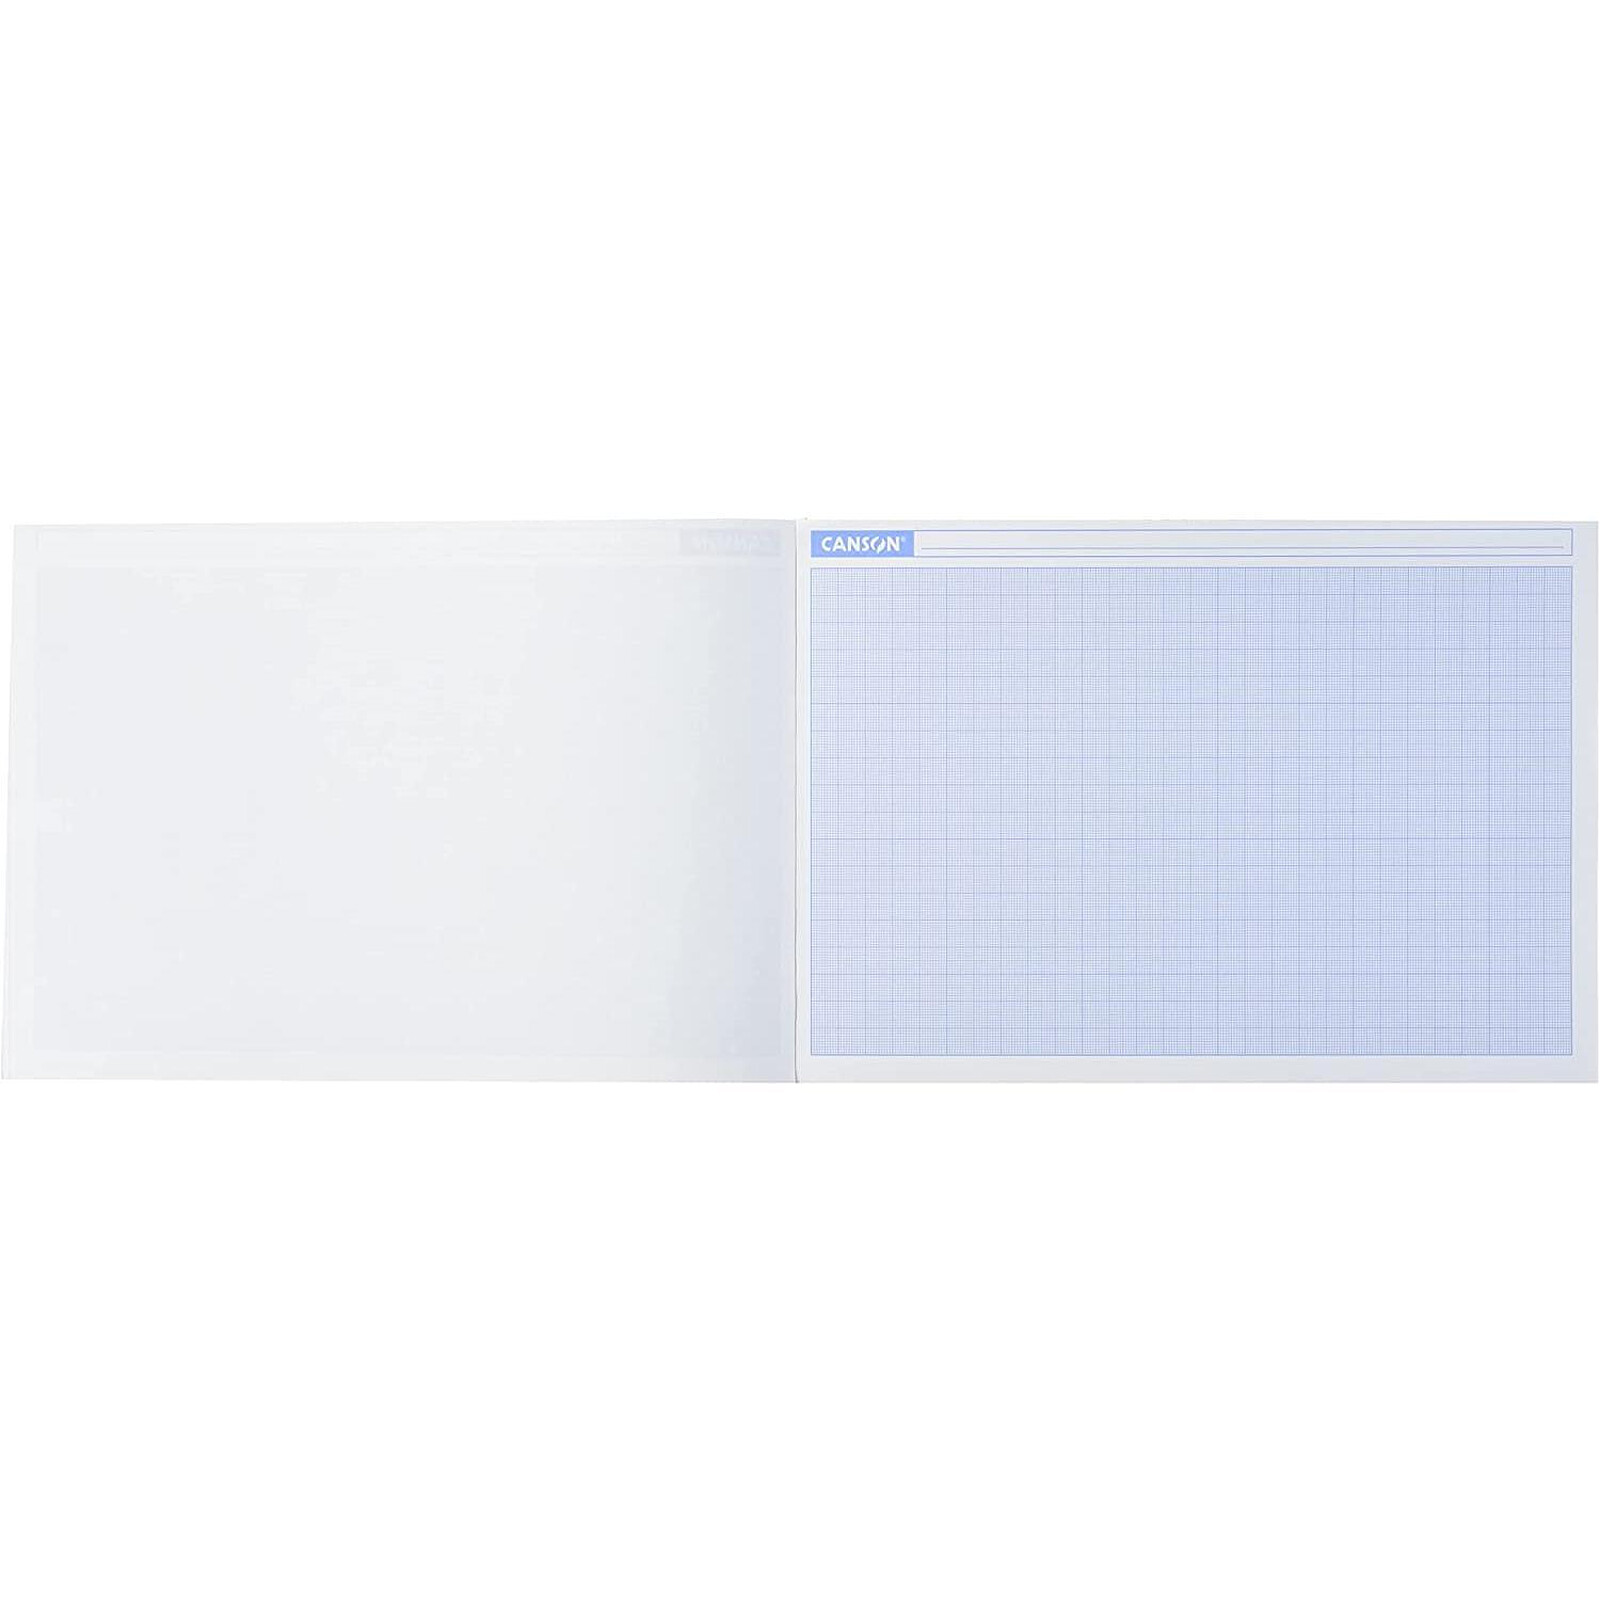 Pochette de 12 feuilles de papier millimétré A4 - 90g - CANSON